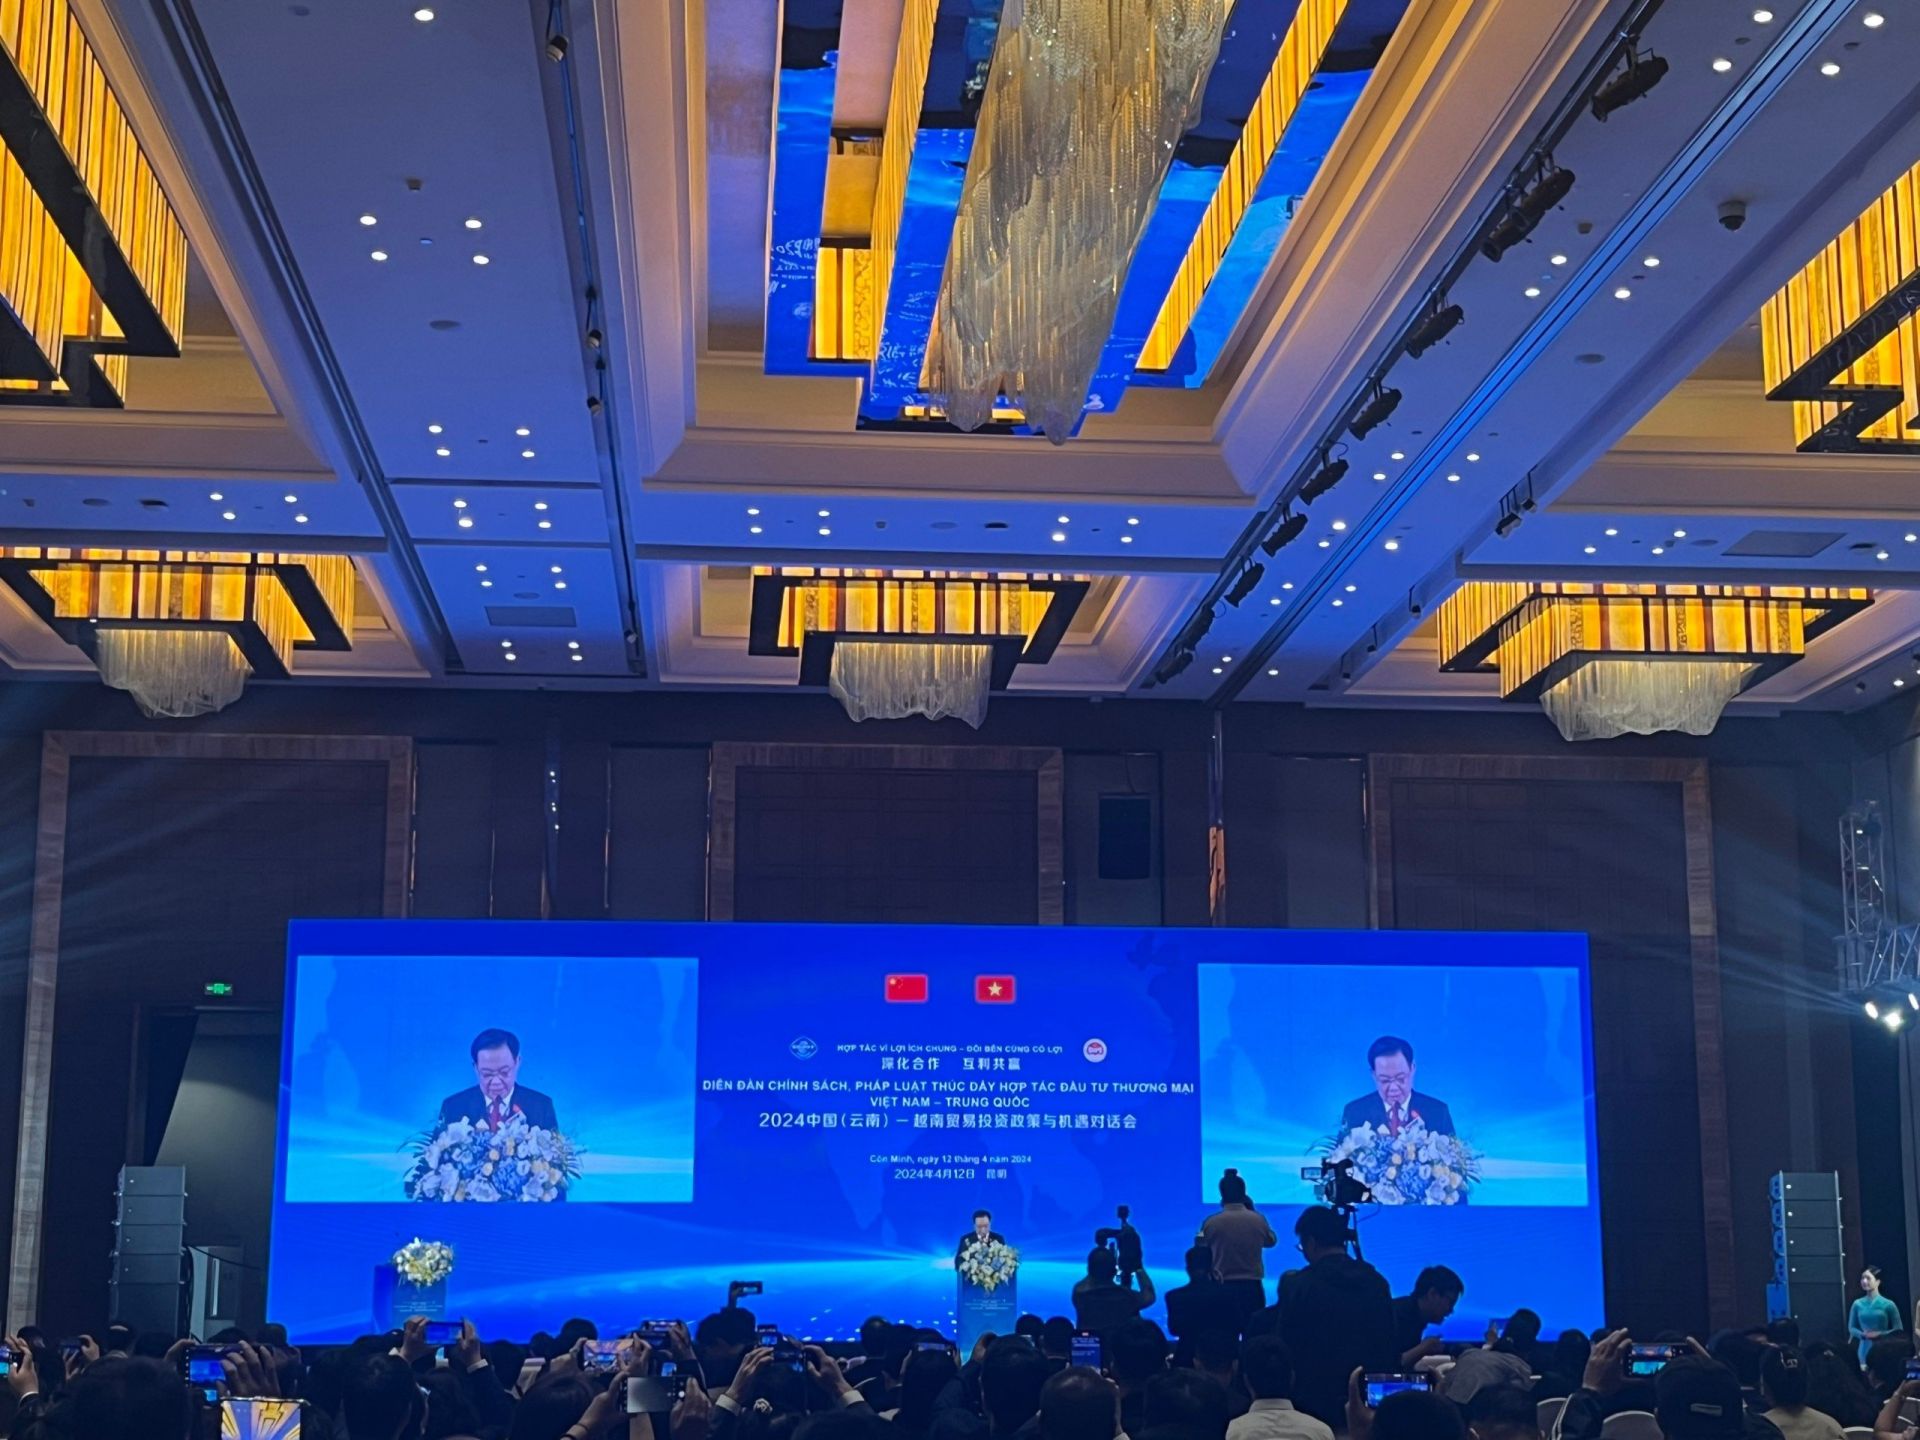 Chủ tịch Quốc hội Vương Đình Huệ phát biểu tại “Diễn đàn Chính sách, Pháp luật thúc đẩy Hợp tác Đầu tư và Thương mại giữa Việt Nam - Trung Quốc” được tổ chức tại tỉnh Vân Nam, Trung Quốc